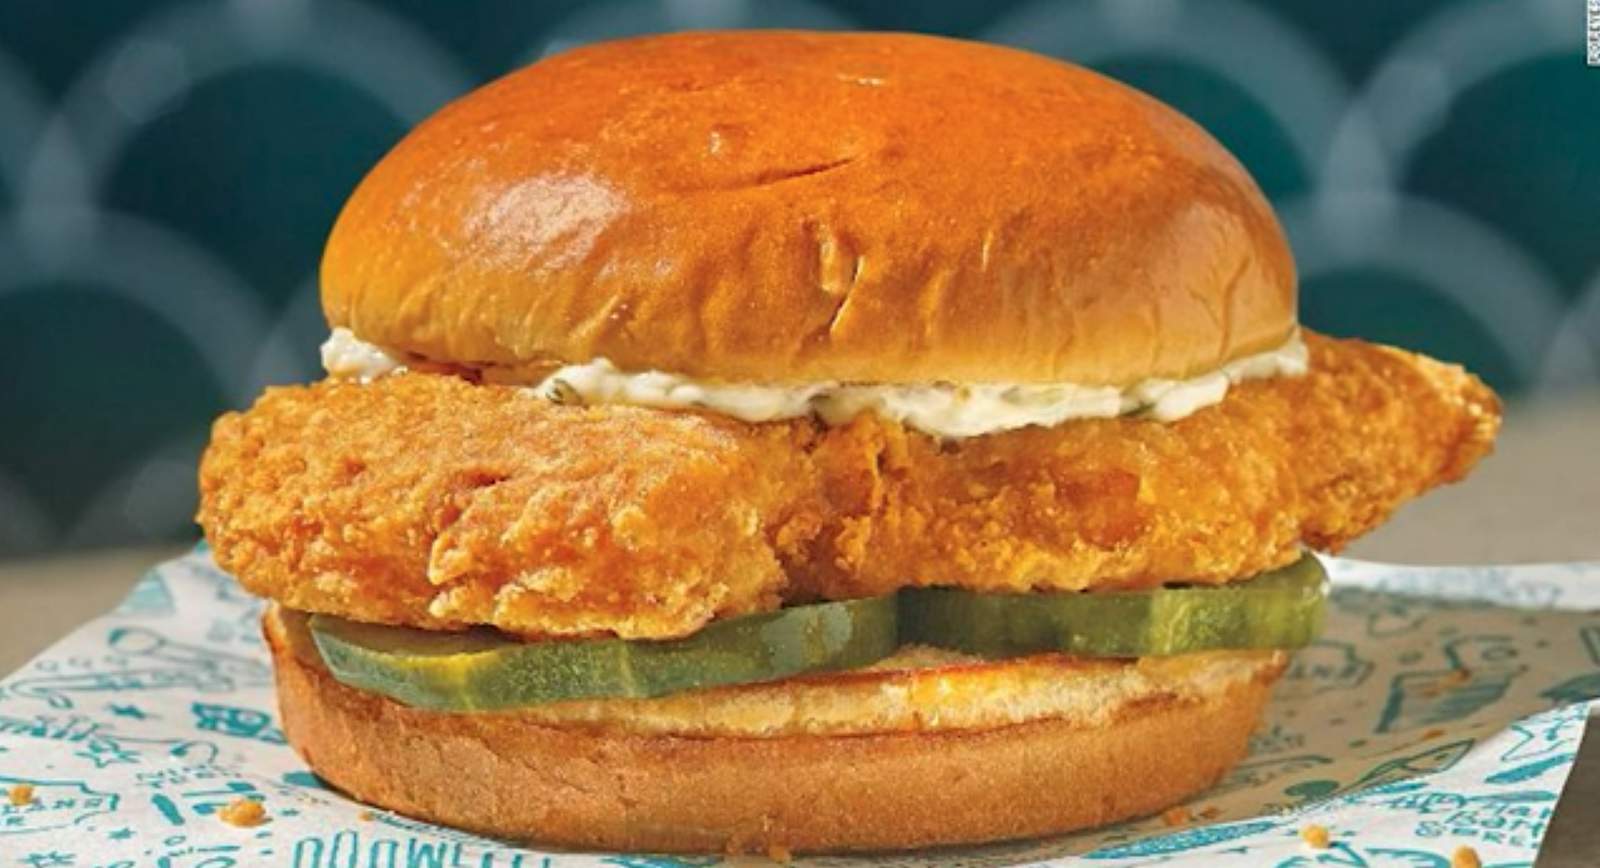 Popeye’s unveils first-ever Cajun Flounder Sandwich